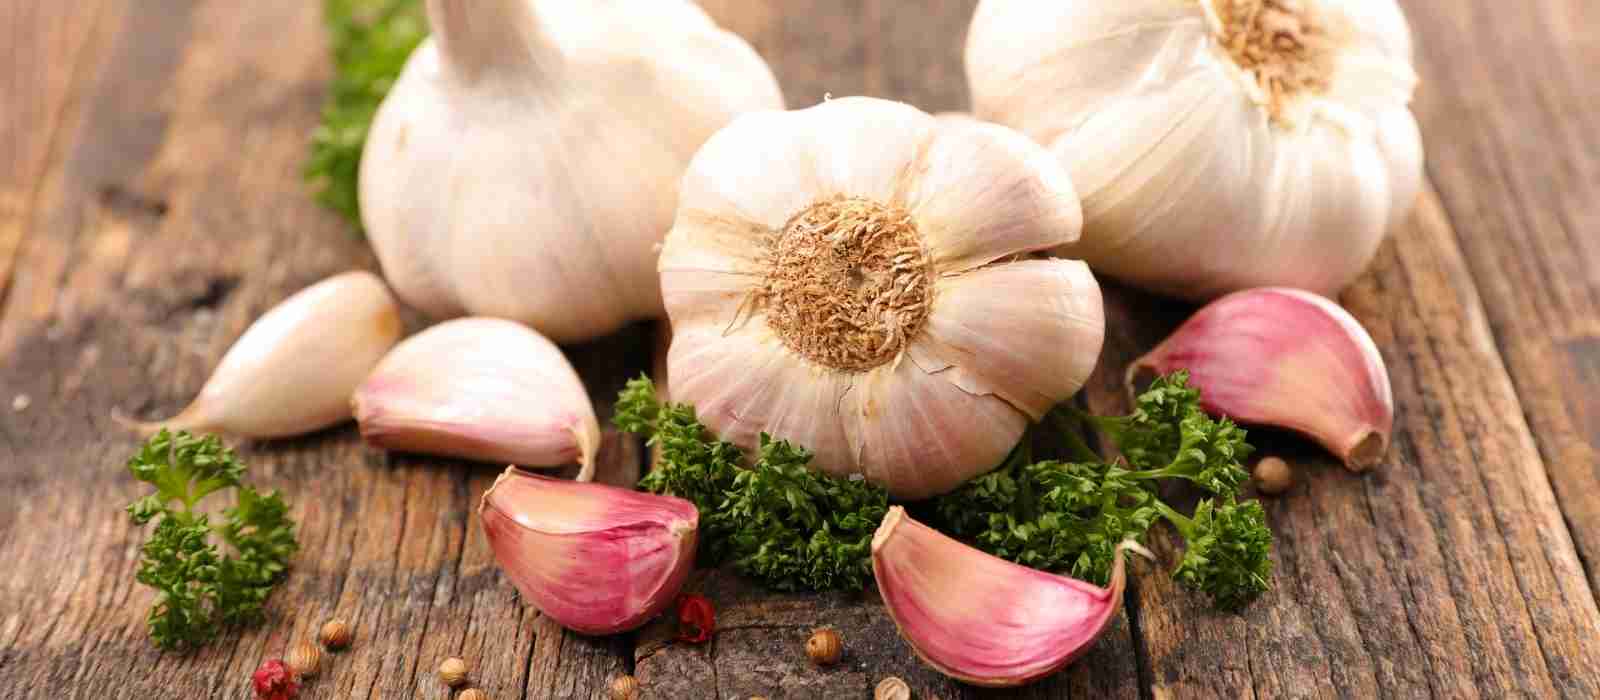 Can Garlic Cause Diaper Rash